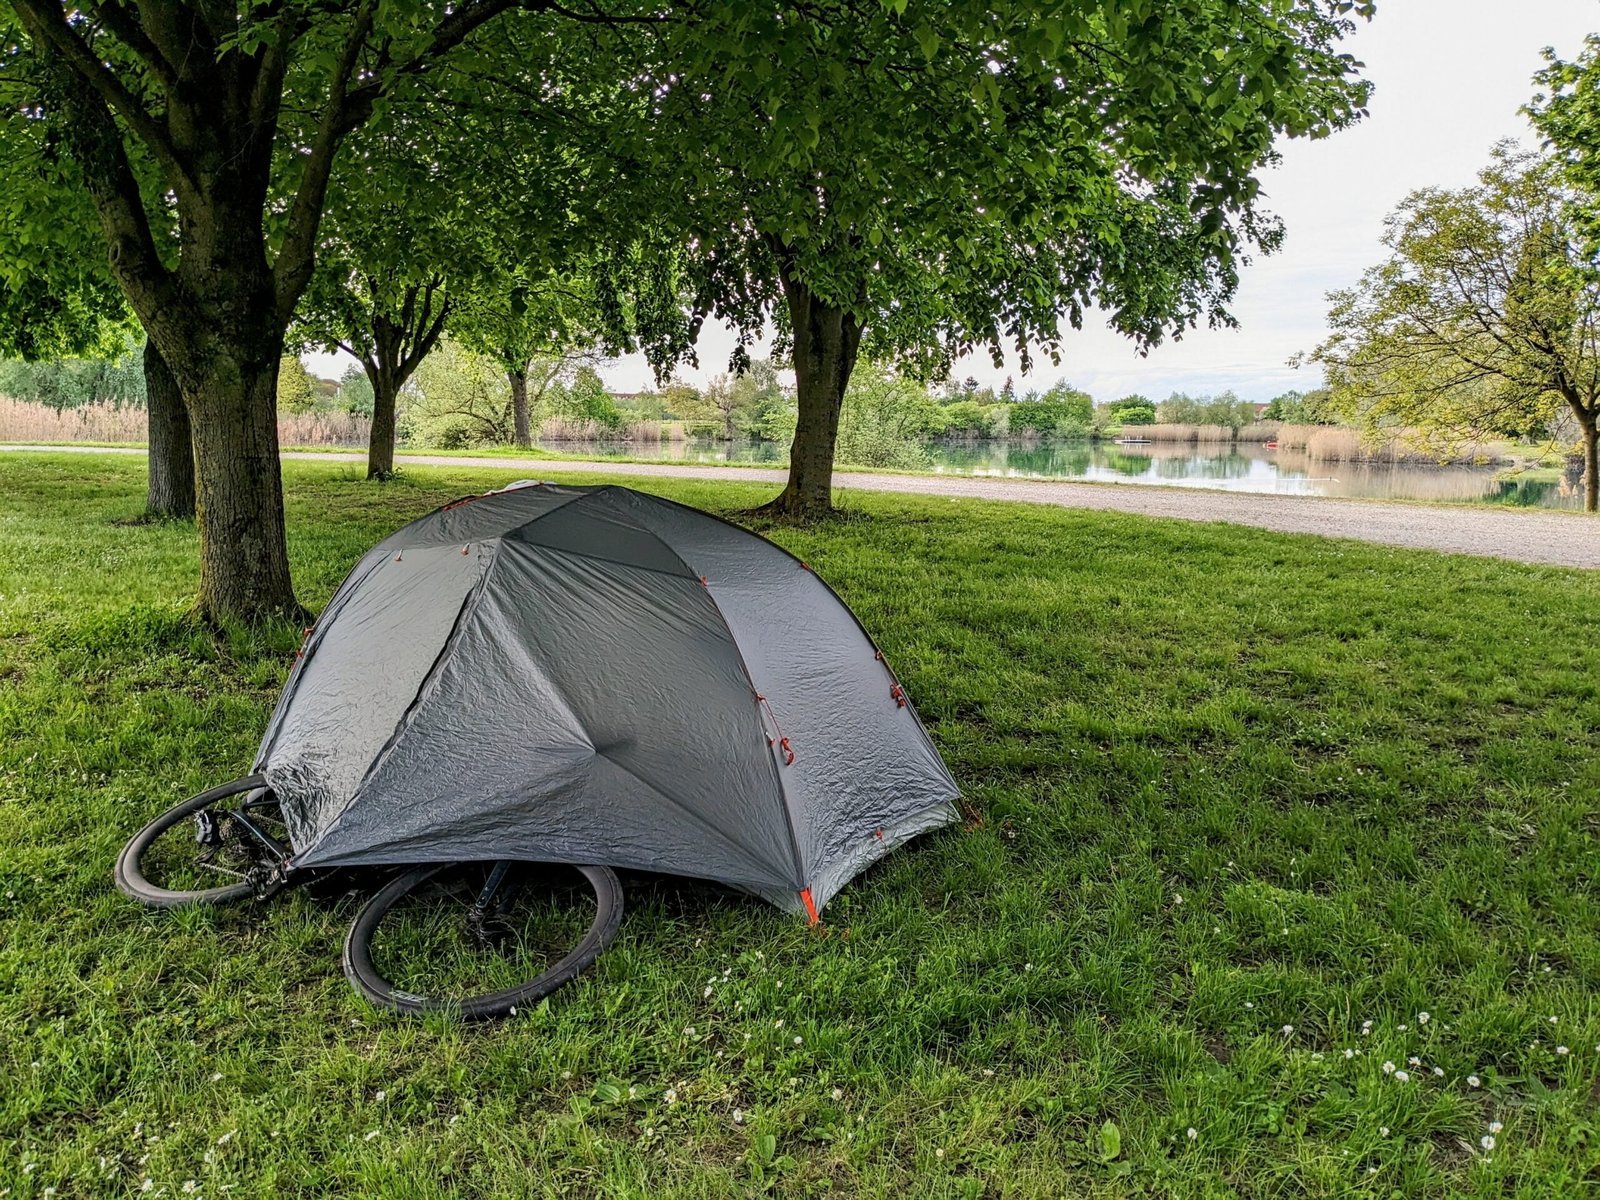 Comment choisir une bonne tente pour le camping ?